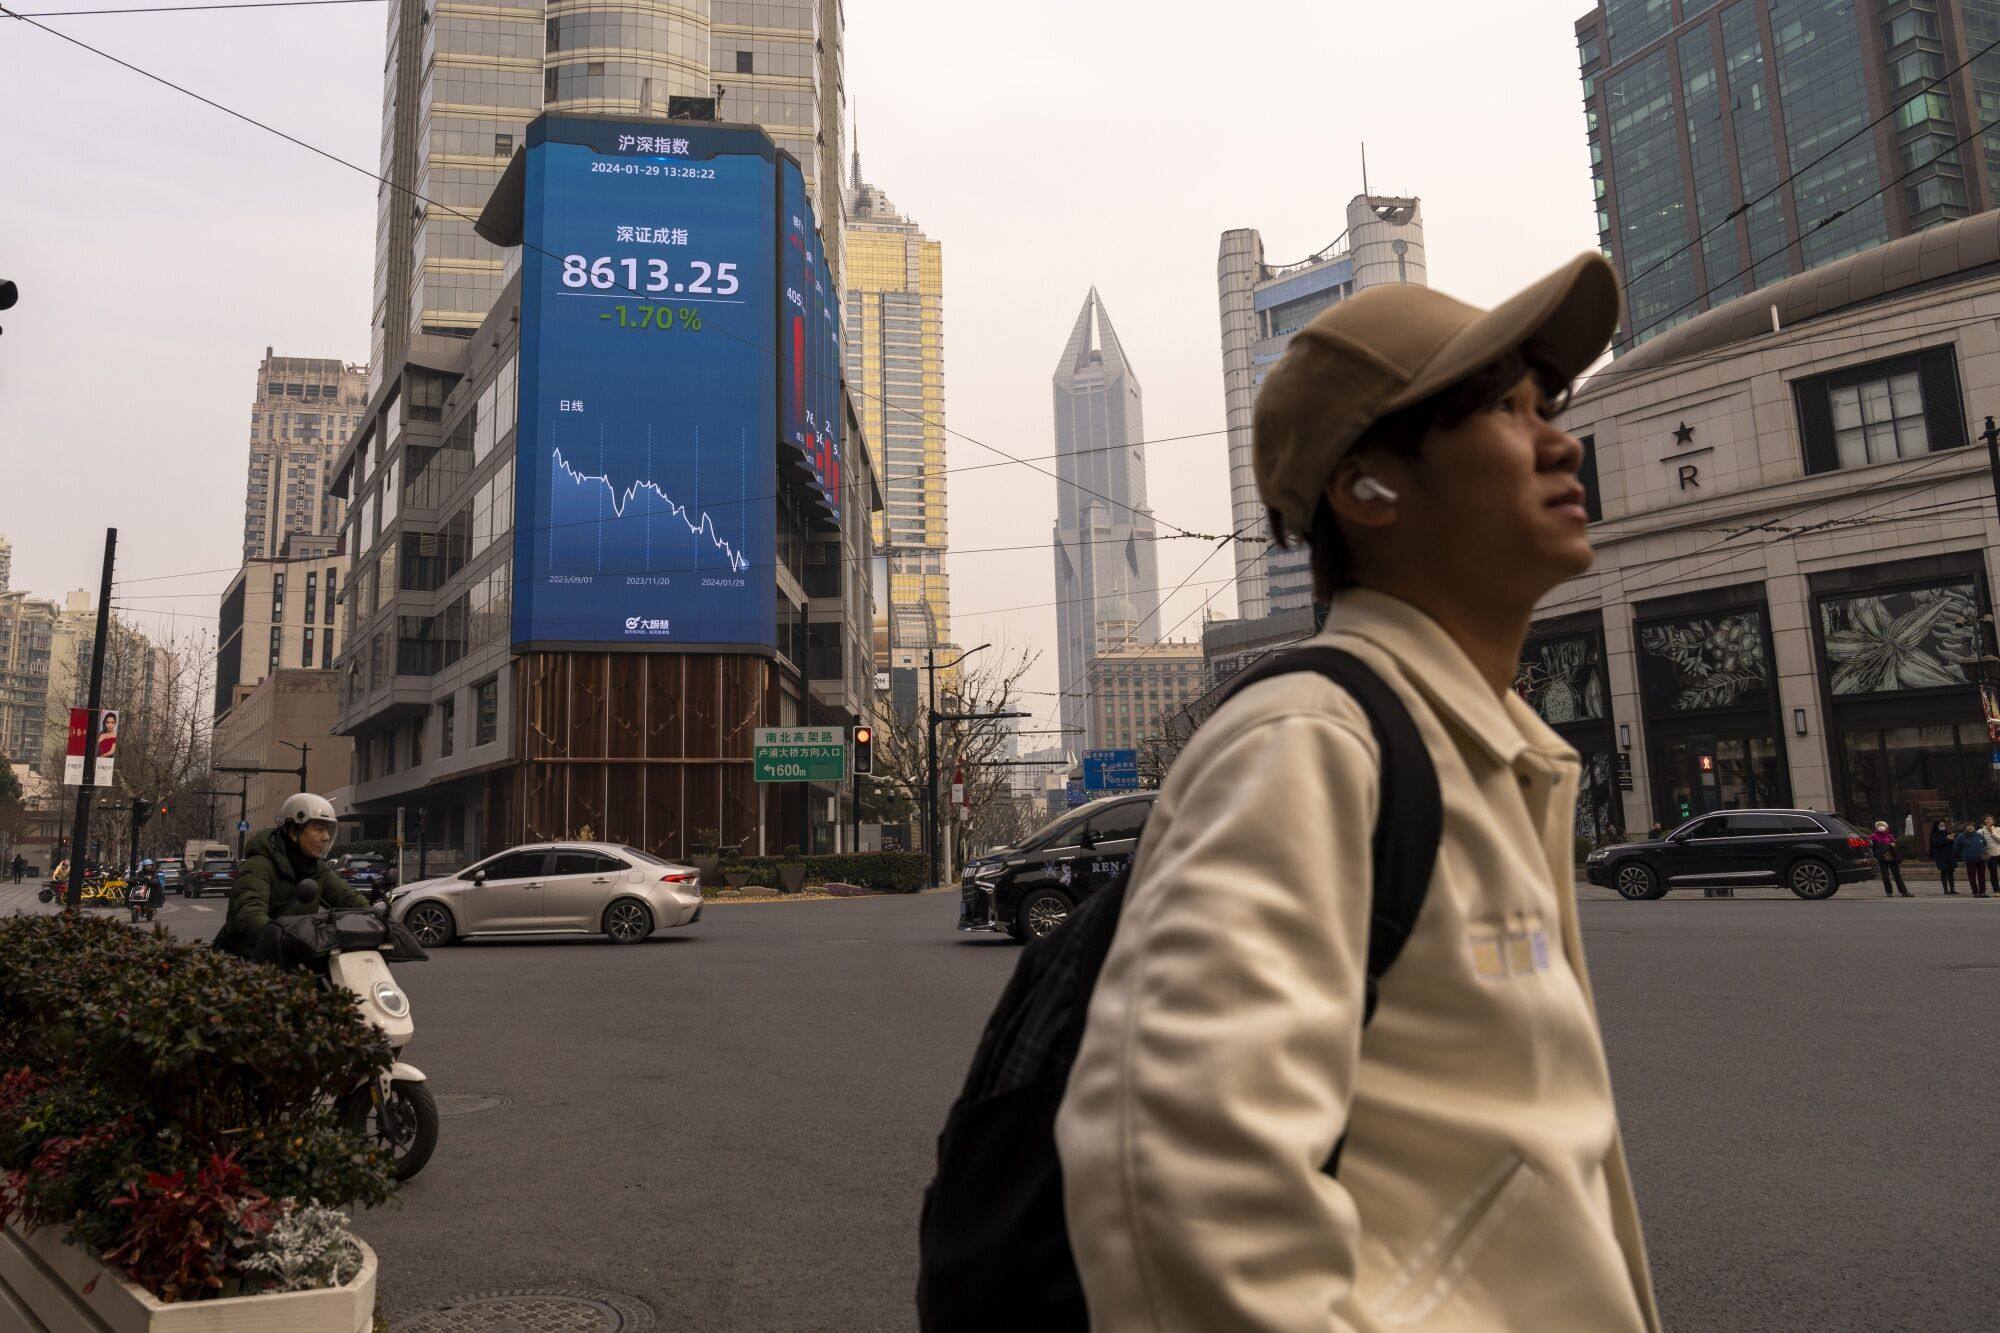 China’s sluggish economy has affected its stock markets. Photo: Bloomberg